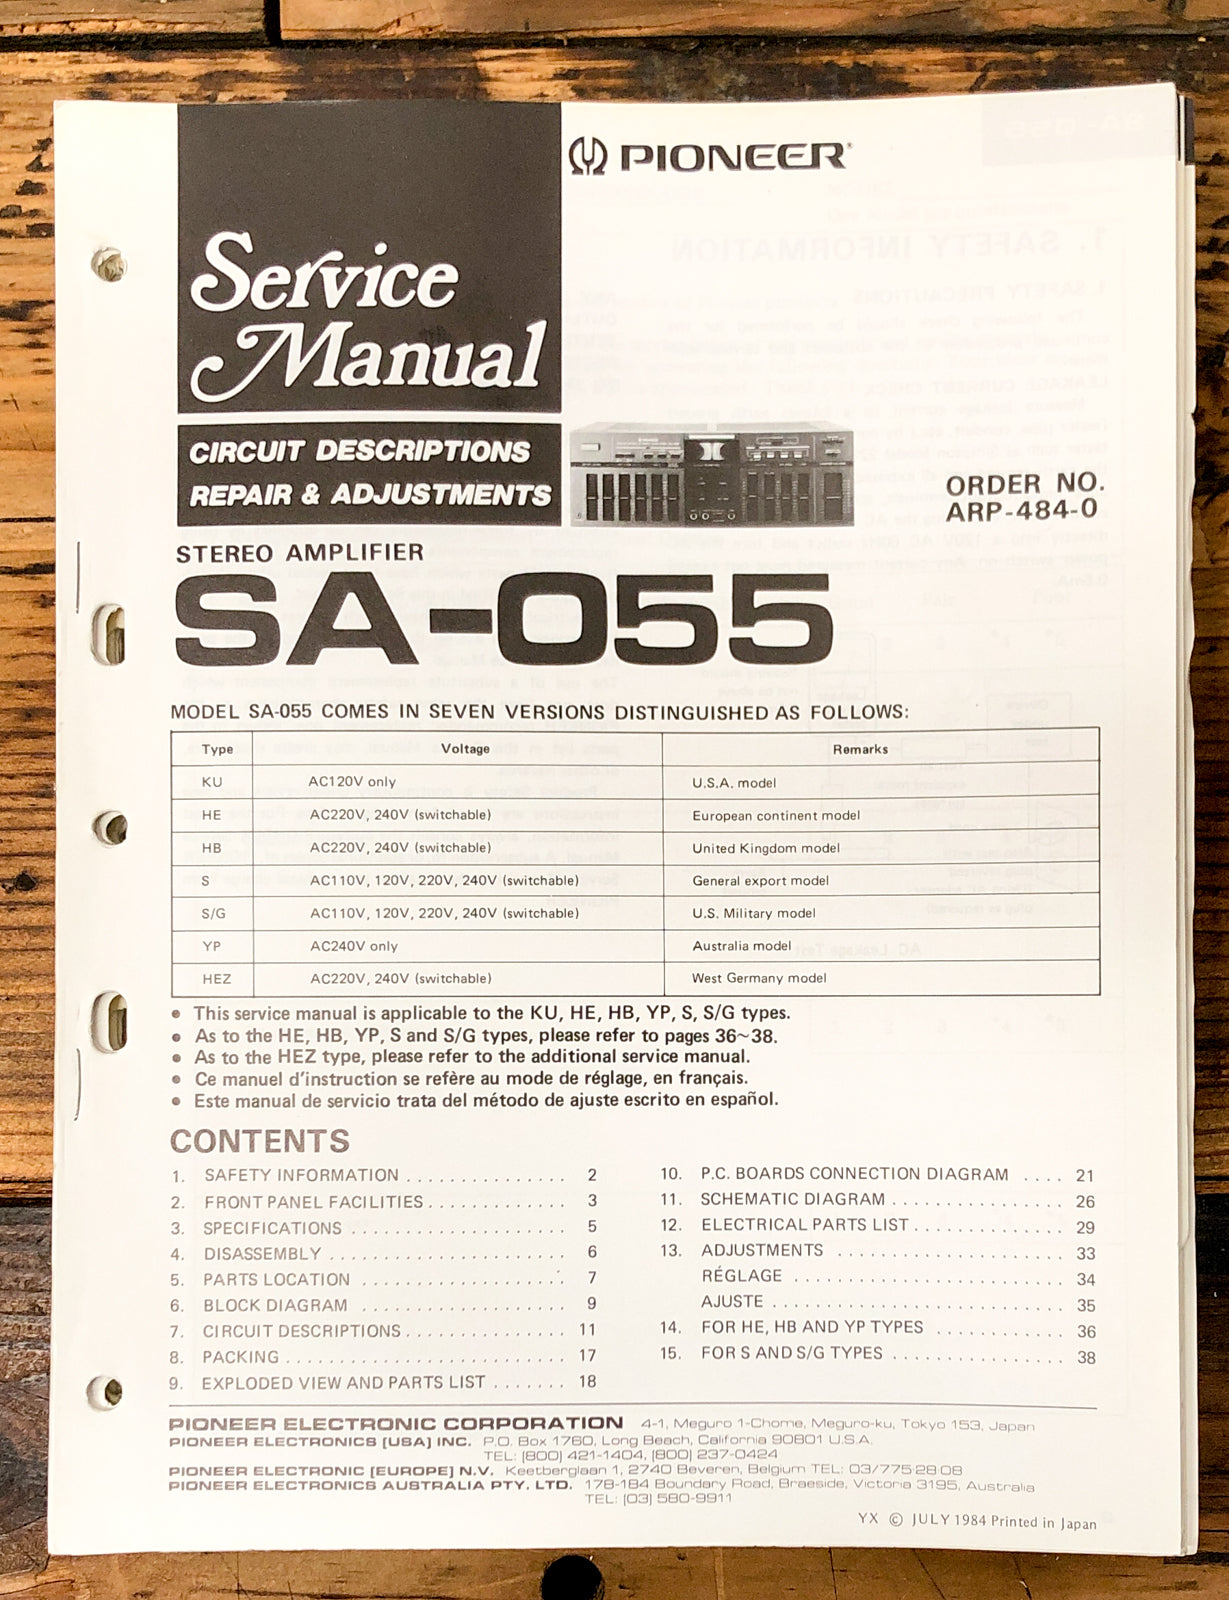 Pioneer SA-055 Amplifier Service Manual *Original*